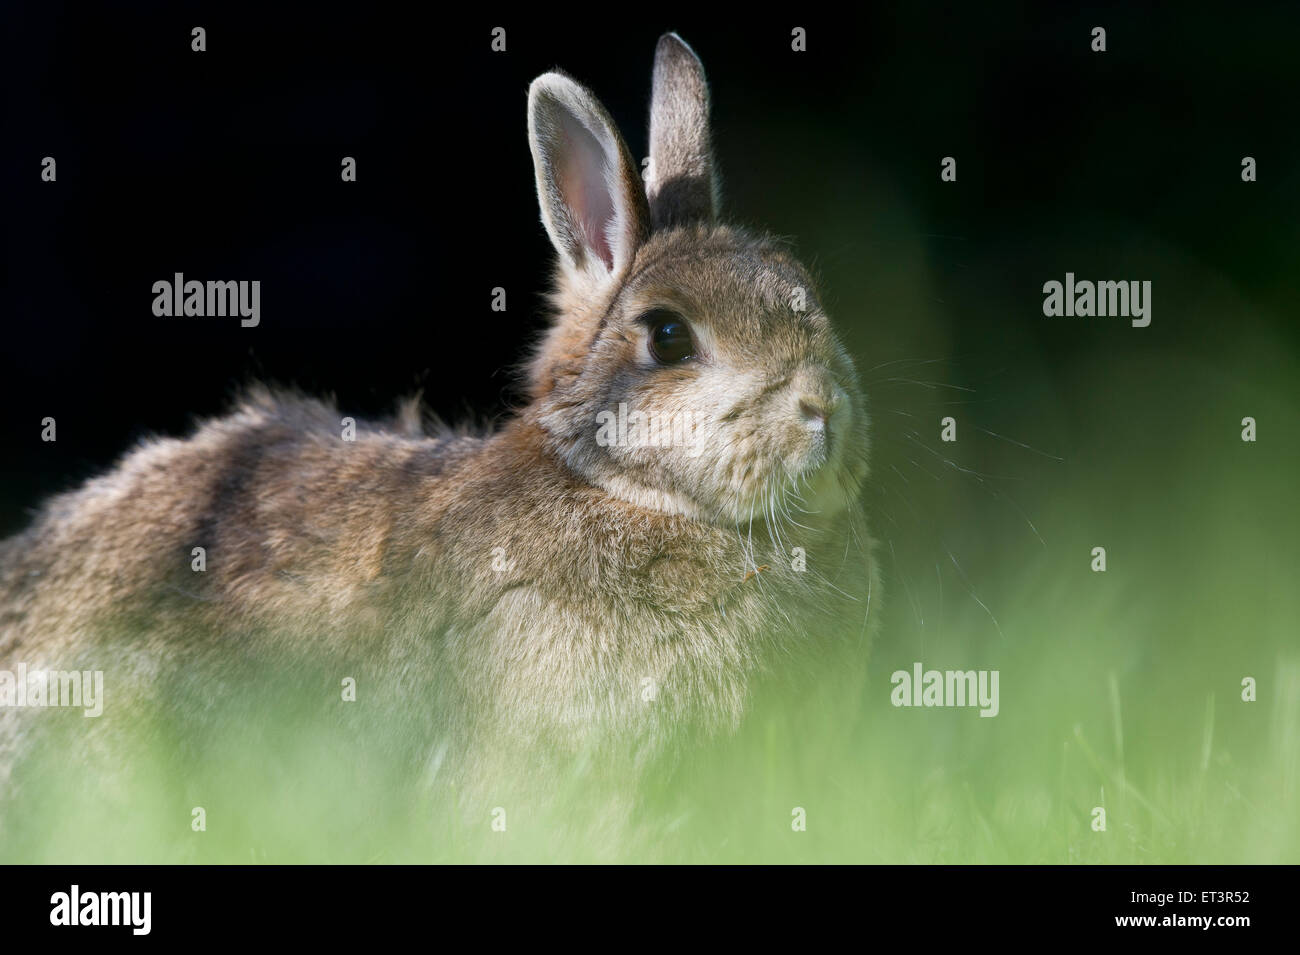 European rabbit or common rabbit (Oryctolagus cuniculus) in a garden Stock Photo